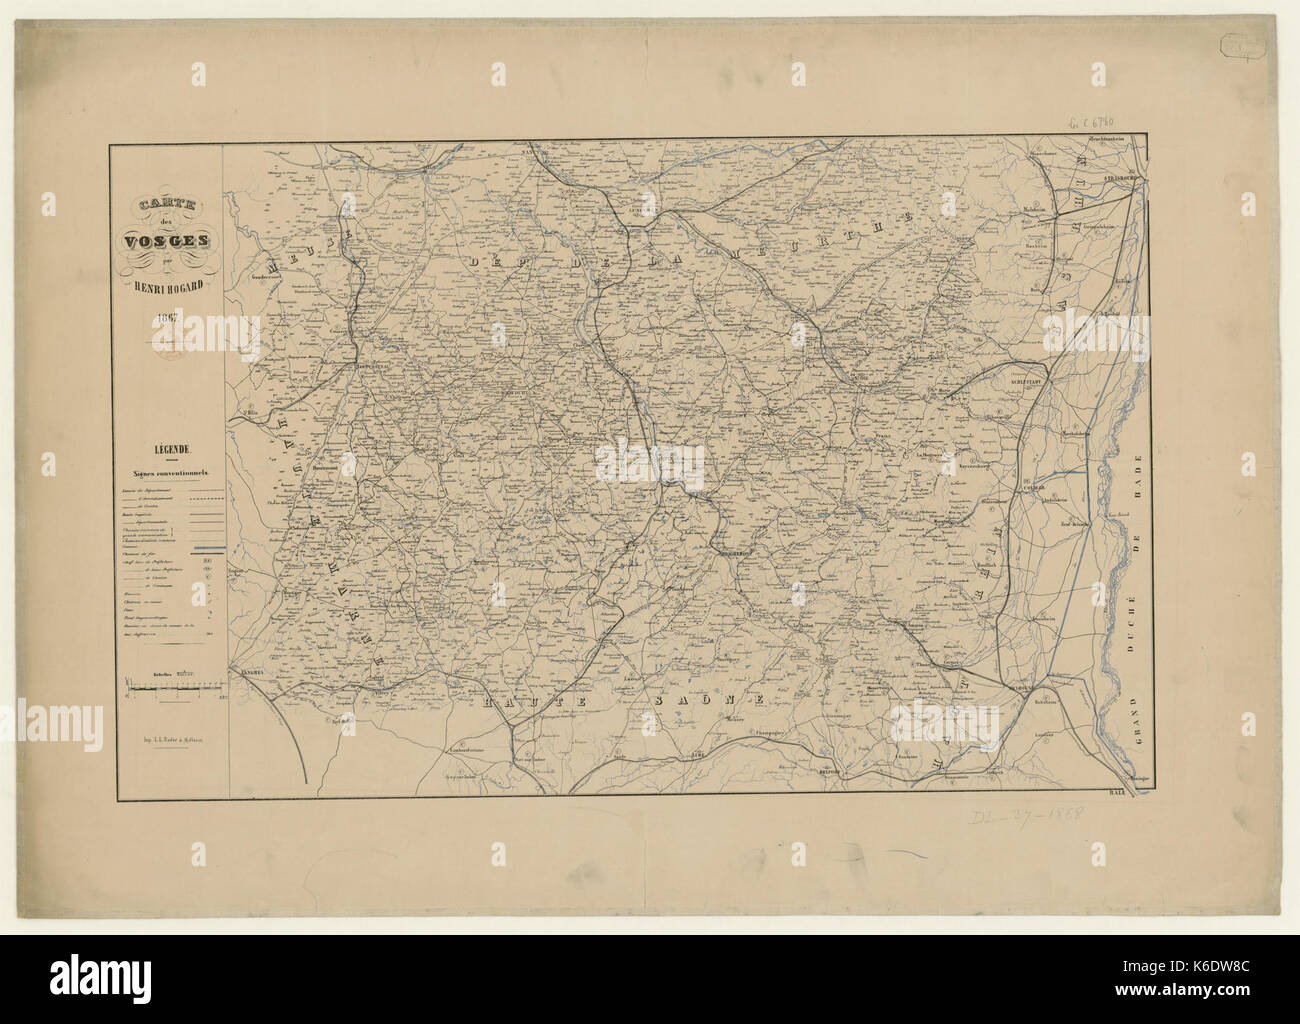 Carte des Vosges 1867 Stock Photo - Alamy